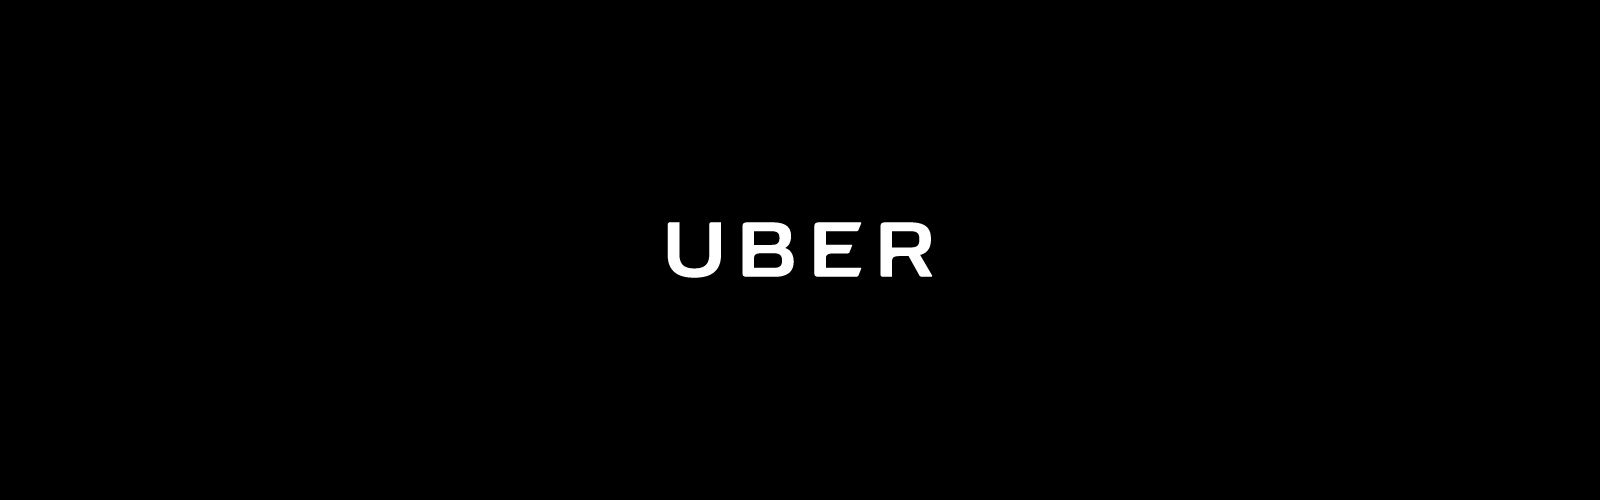 uber-logo-1600-1600×500